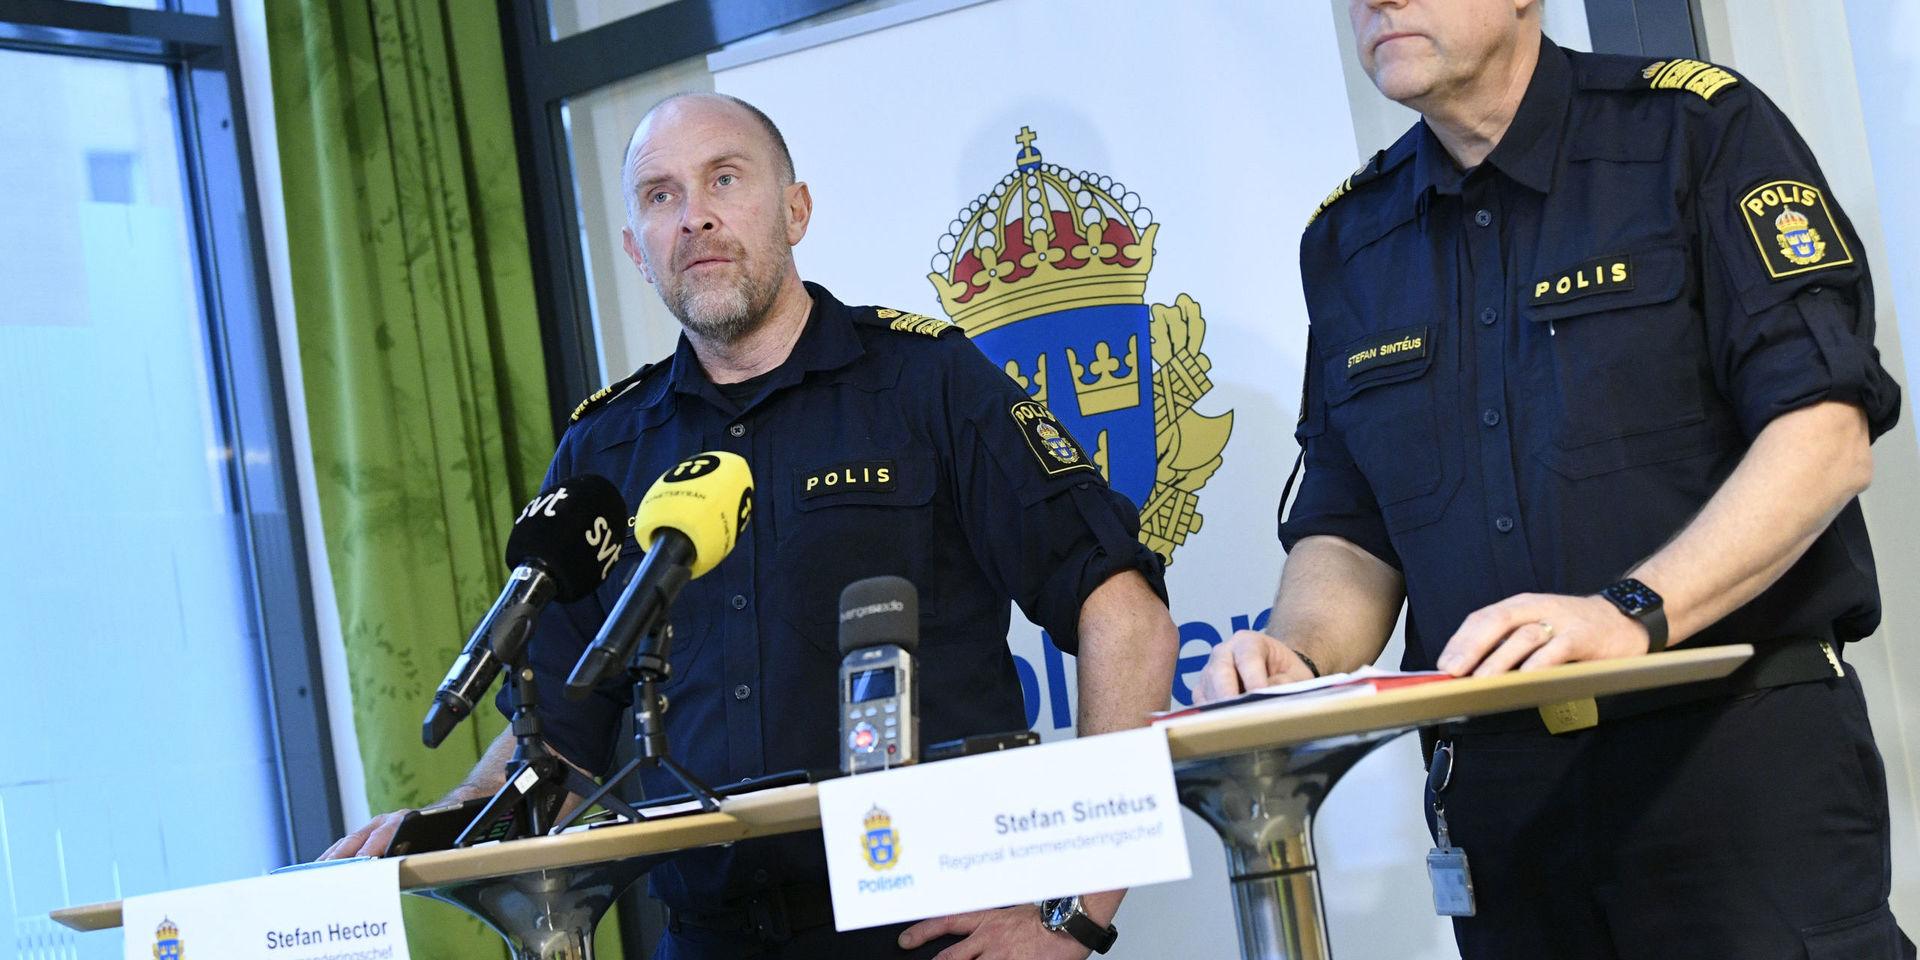 Stefan Hector, nationell kommenderingschef för Operation rimfrost och Stefan Sintéus, regional kommenderingschef, på en pressträff i Malmö.